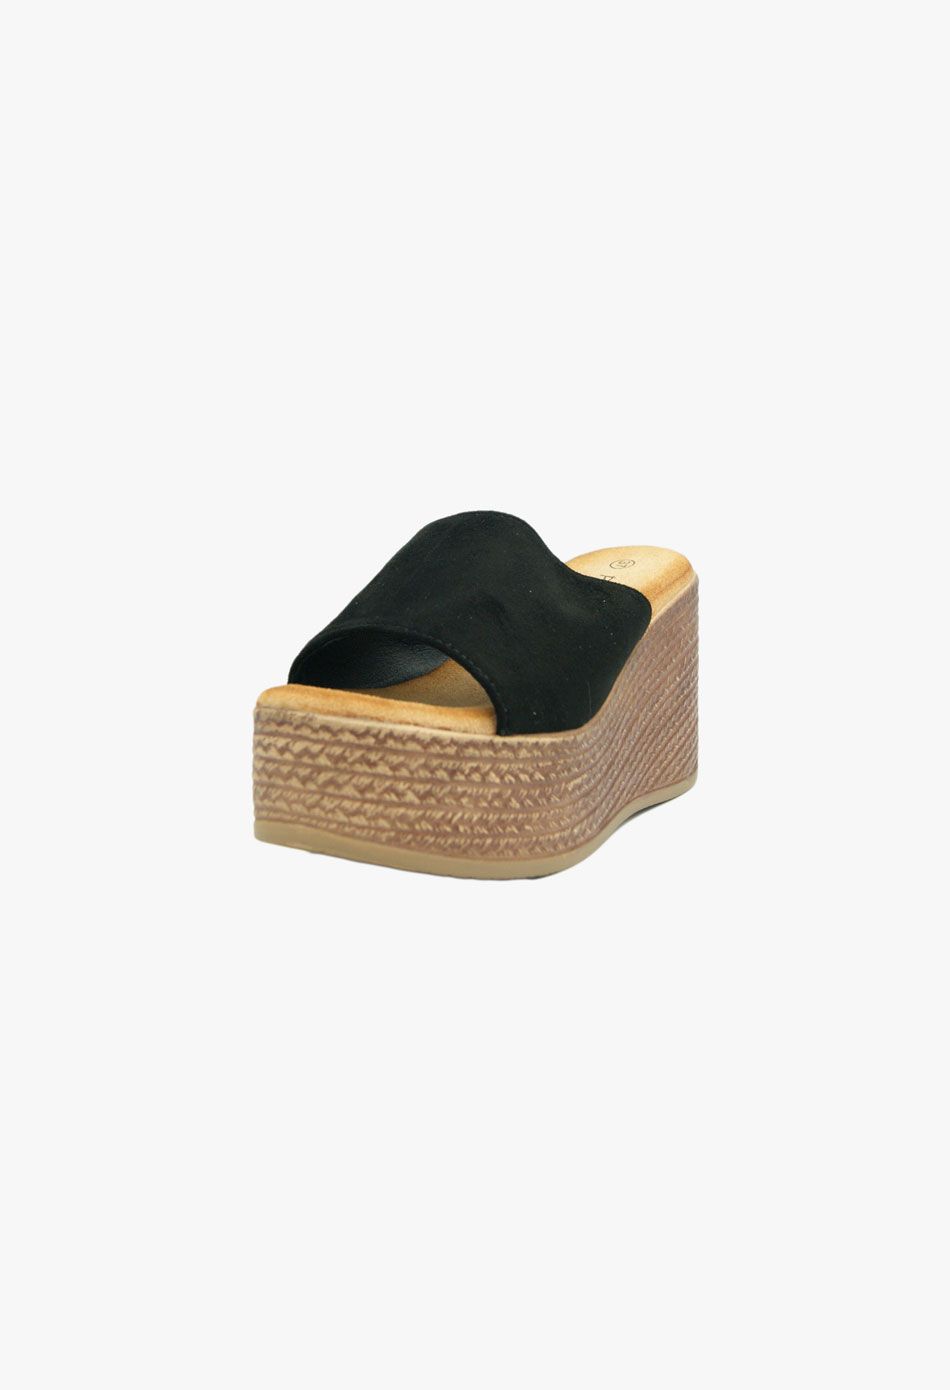 Πλατφόρμες Σουέτ με Φαρδιά Φάσα Μαύρο / WS-152-black Ανοιχτά Παπούτσια joya.gr